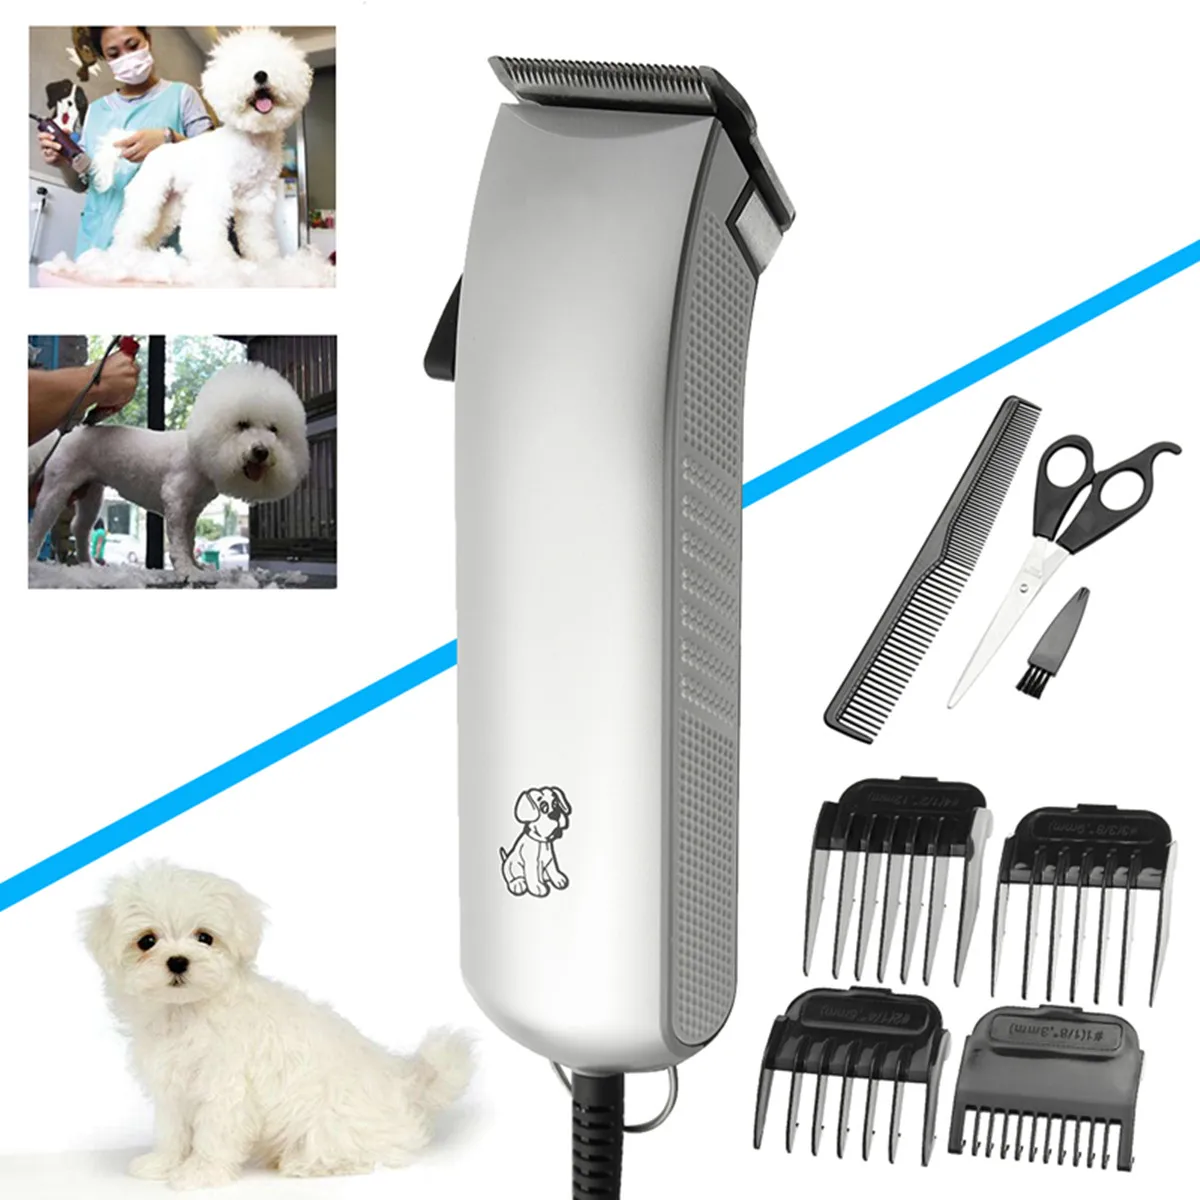 EU Регулируемый Электрический триммер для домашних животных, кошек, собак, профессиональная машинка для стрижки волос, триммер, бритва, резак для волос, машинка для стрижки собак